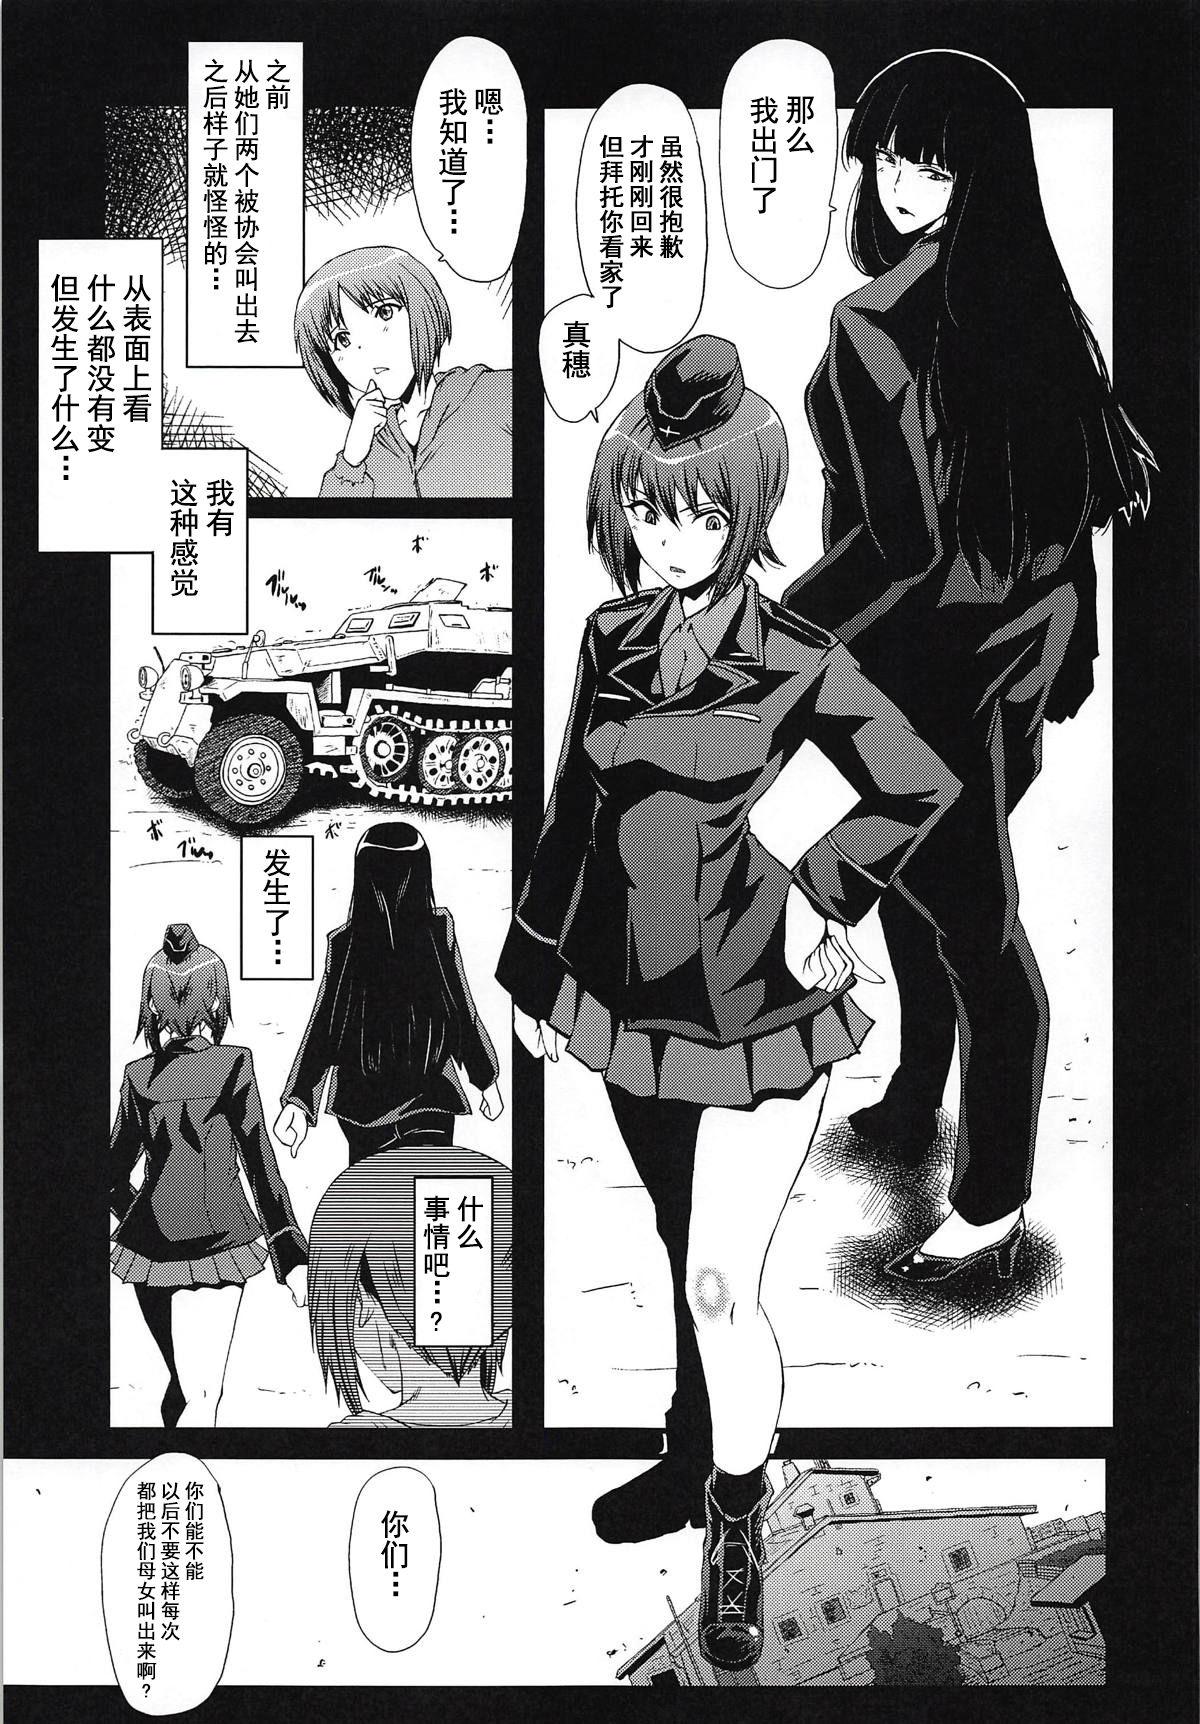 Rebolando Urabambi Vol. 57 Taihai no Koutetsu Fujin - Girls und panzer Plump - Page 4